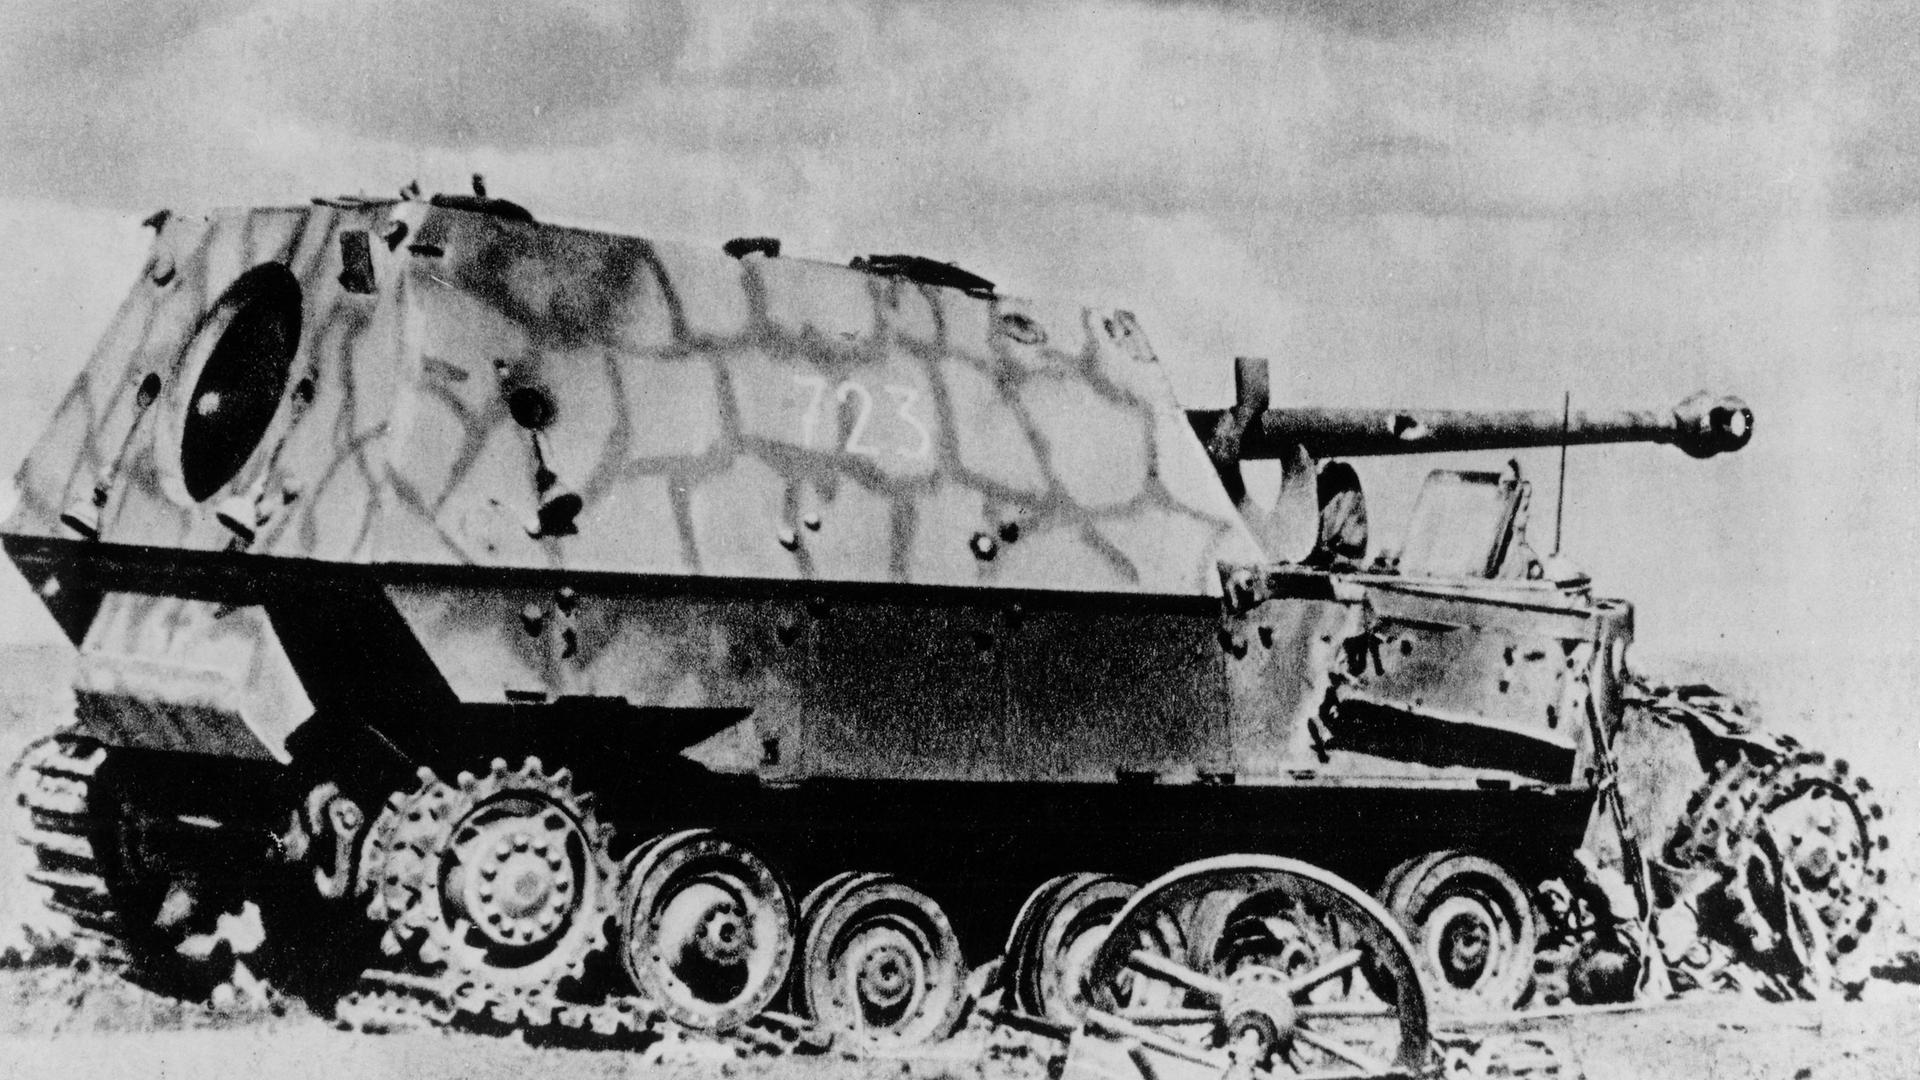 Schwarz-Weiß-Foto eines zerschossenen Panzers umgeben von Trümmerteilen. Aufnahme vom 05. Juli 1943.